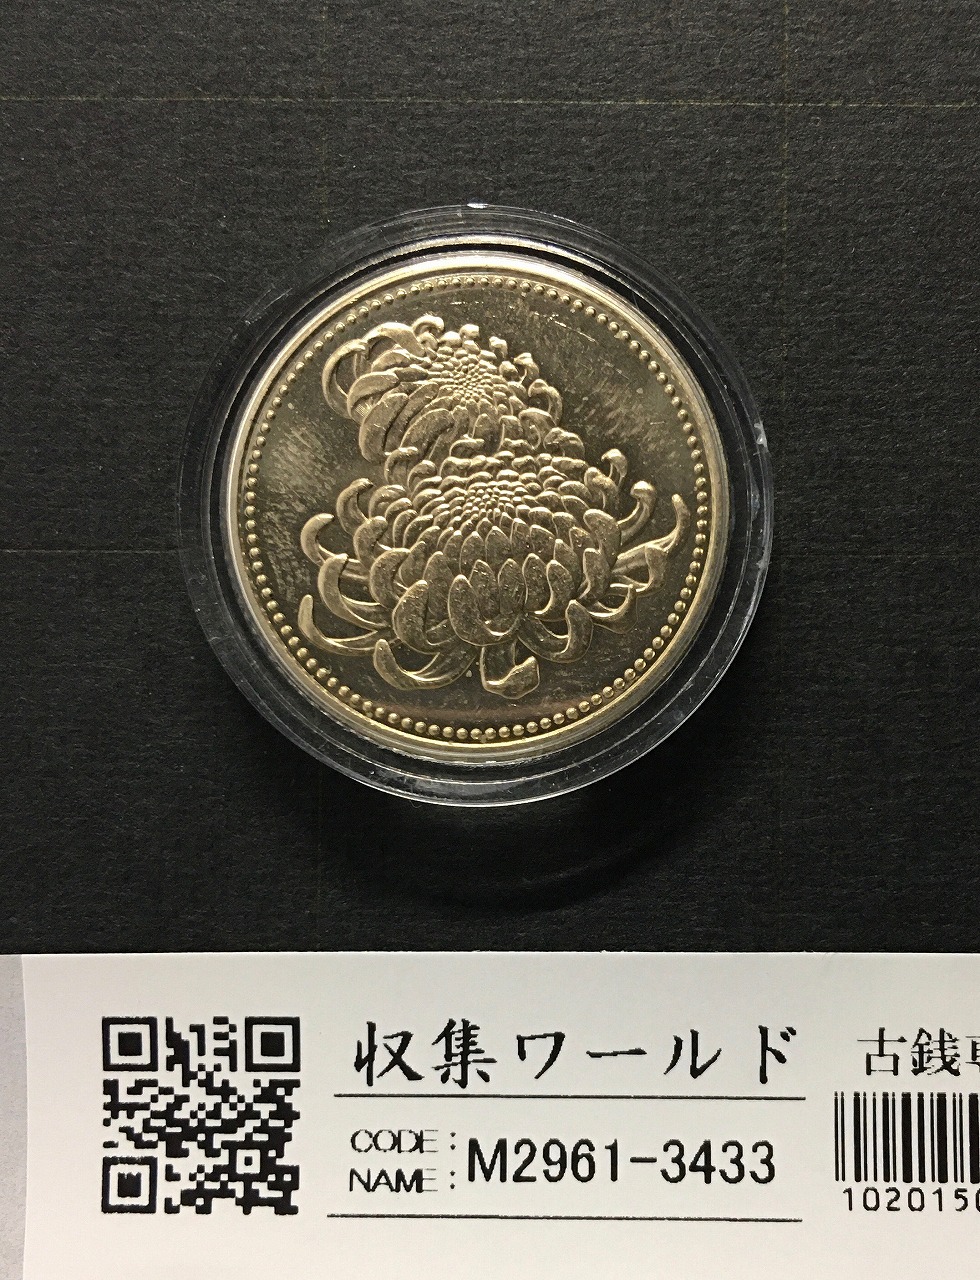 天皇陛下御在位二十年記念 500円黄銅貨 2009年(平成21年) カプセル入 未使用